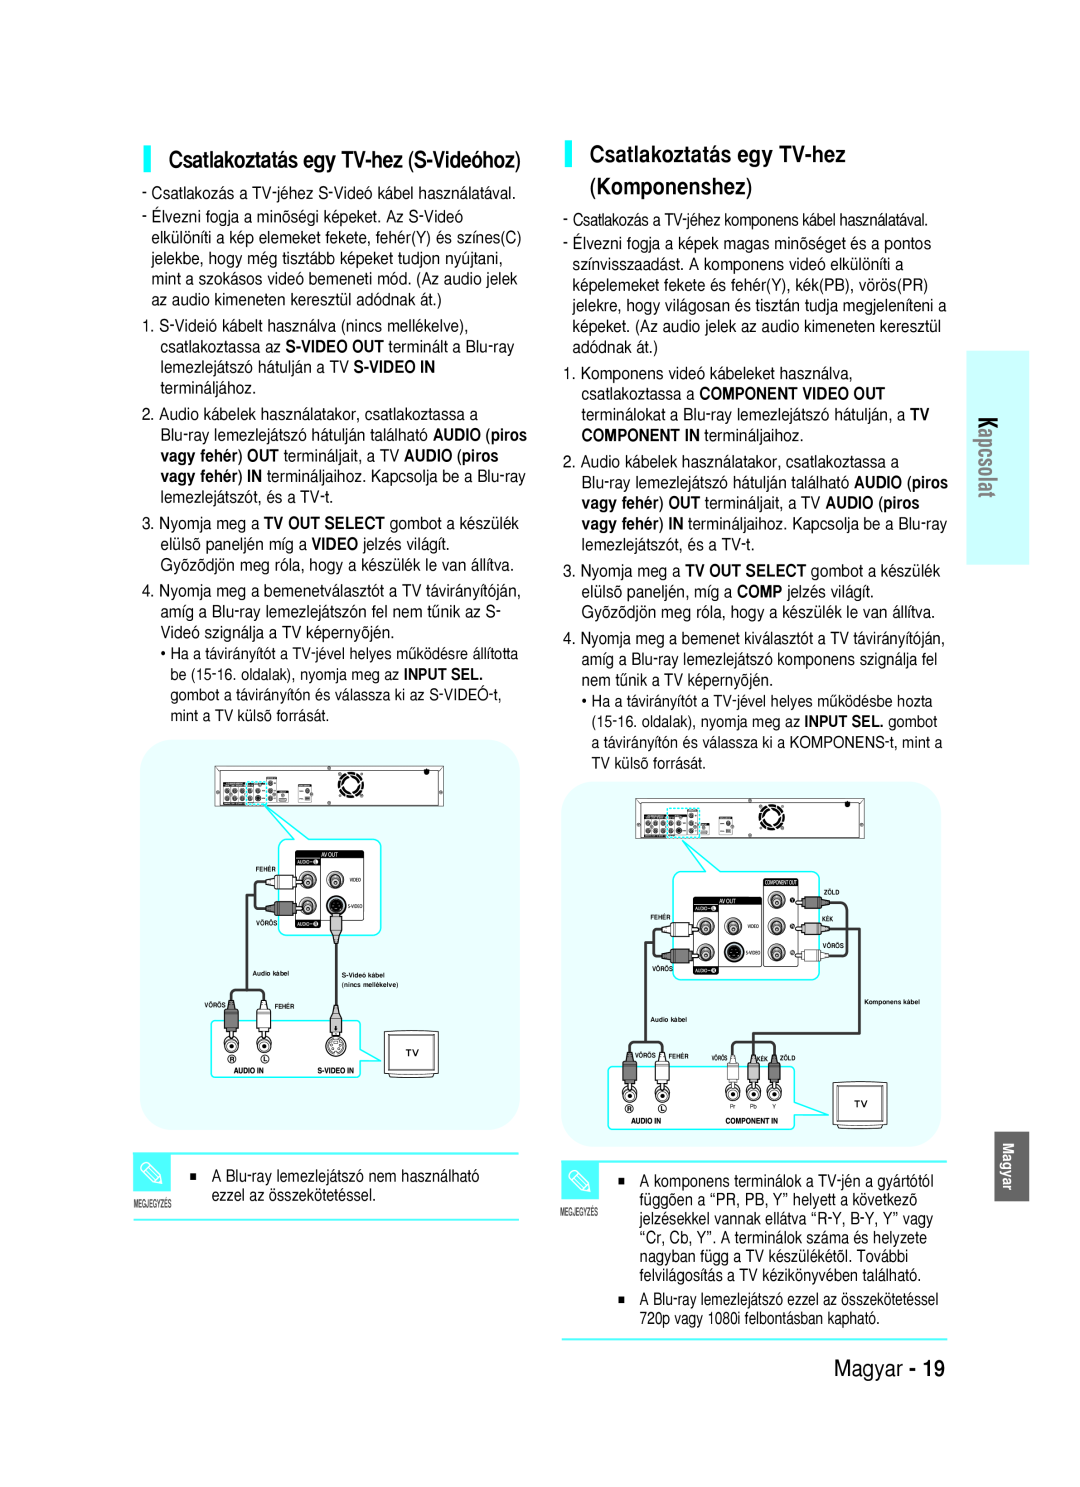 Samsung BD-P1000/XEH manual Csatlakoztatás egy TV-hez Komponenshez, Csatlakoztatás egy TV-hez S-Videóhoz, Magyar, Kapcsolat 